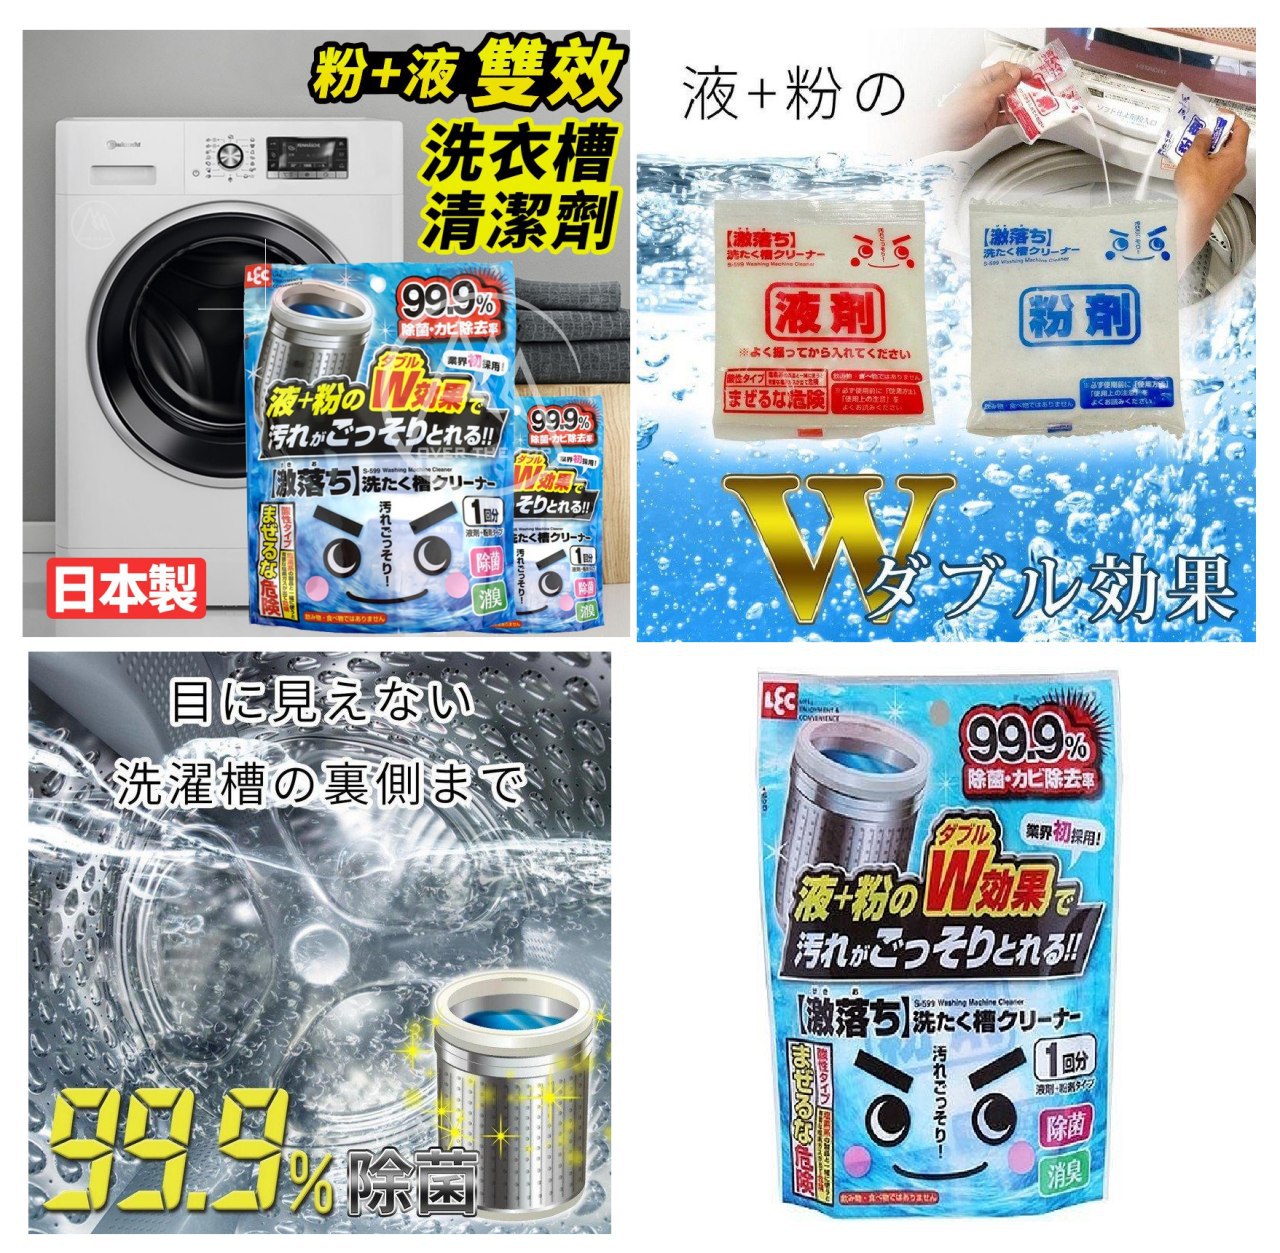 #g預購日本製LEC激落君洗衣槽雙效清潔劑 70g*2包